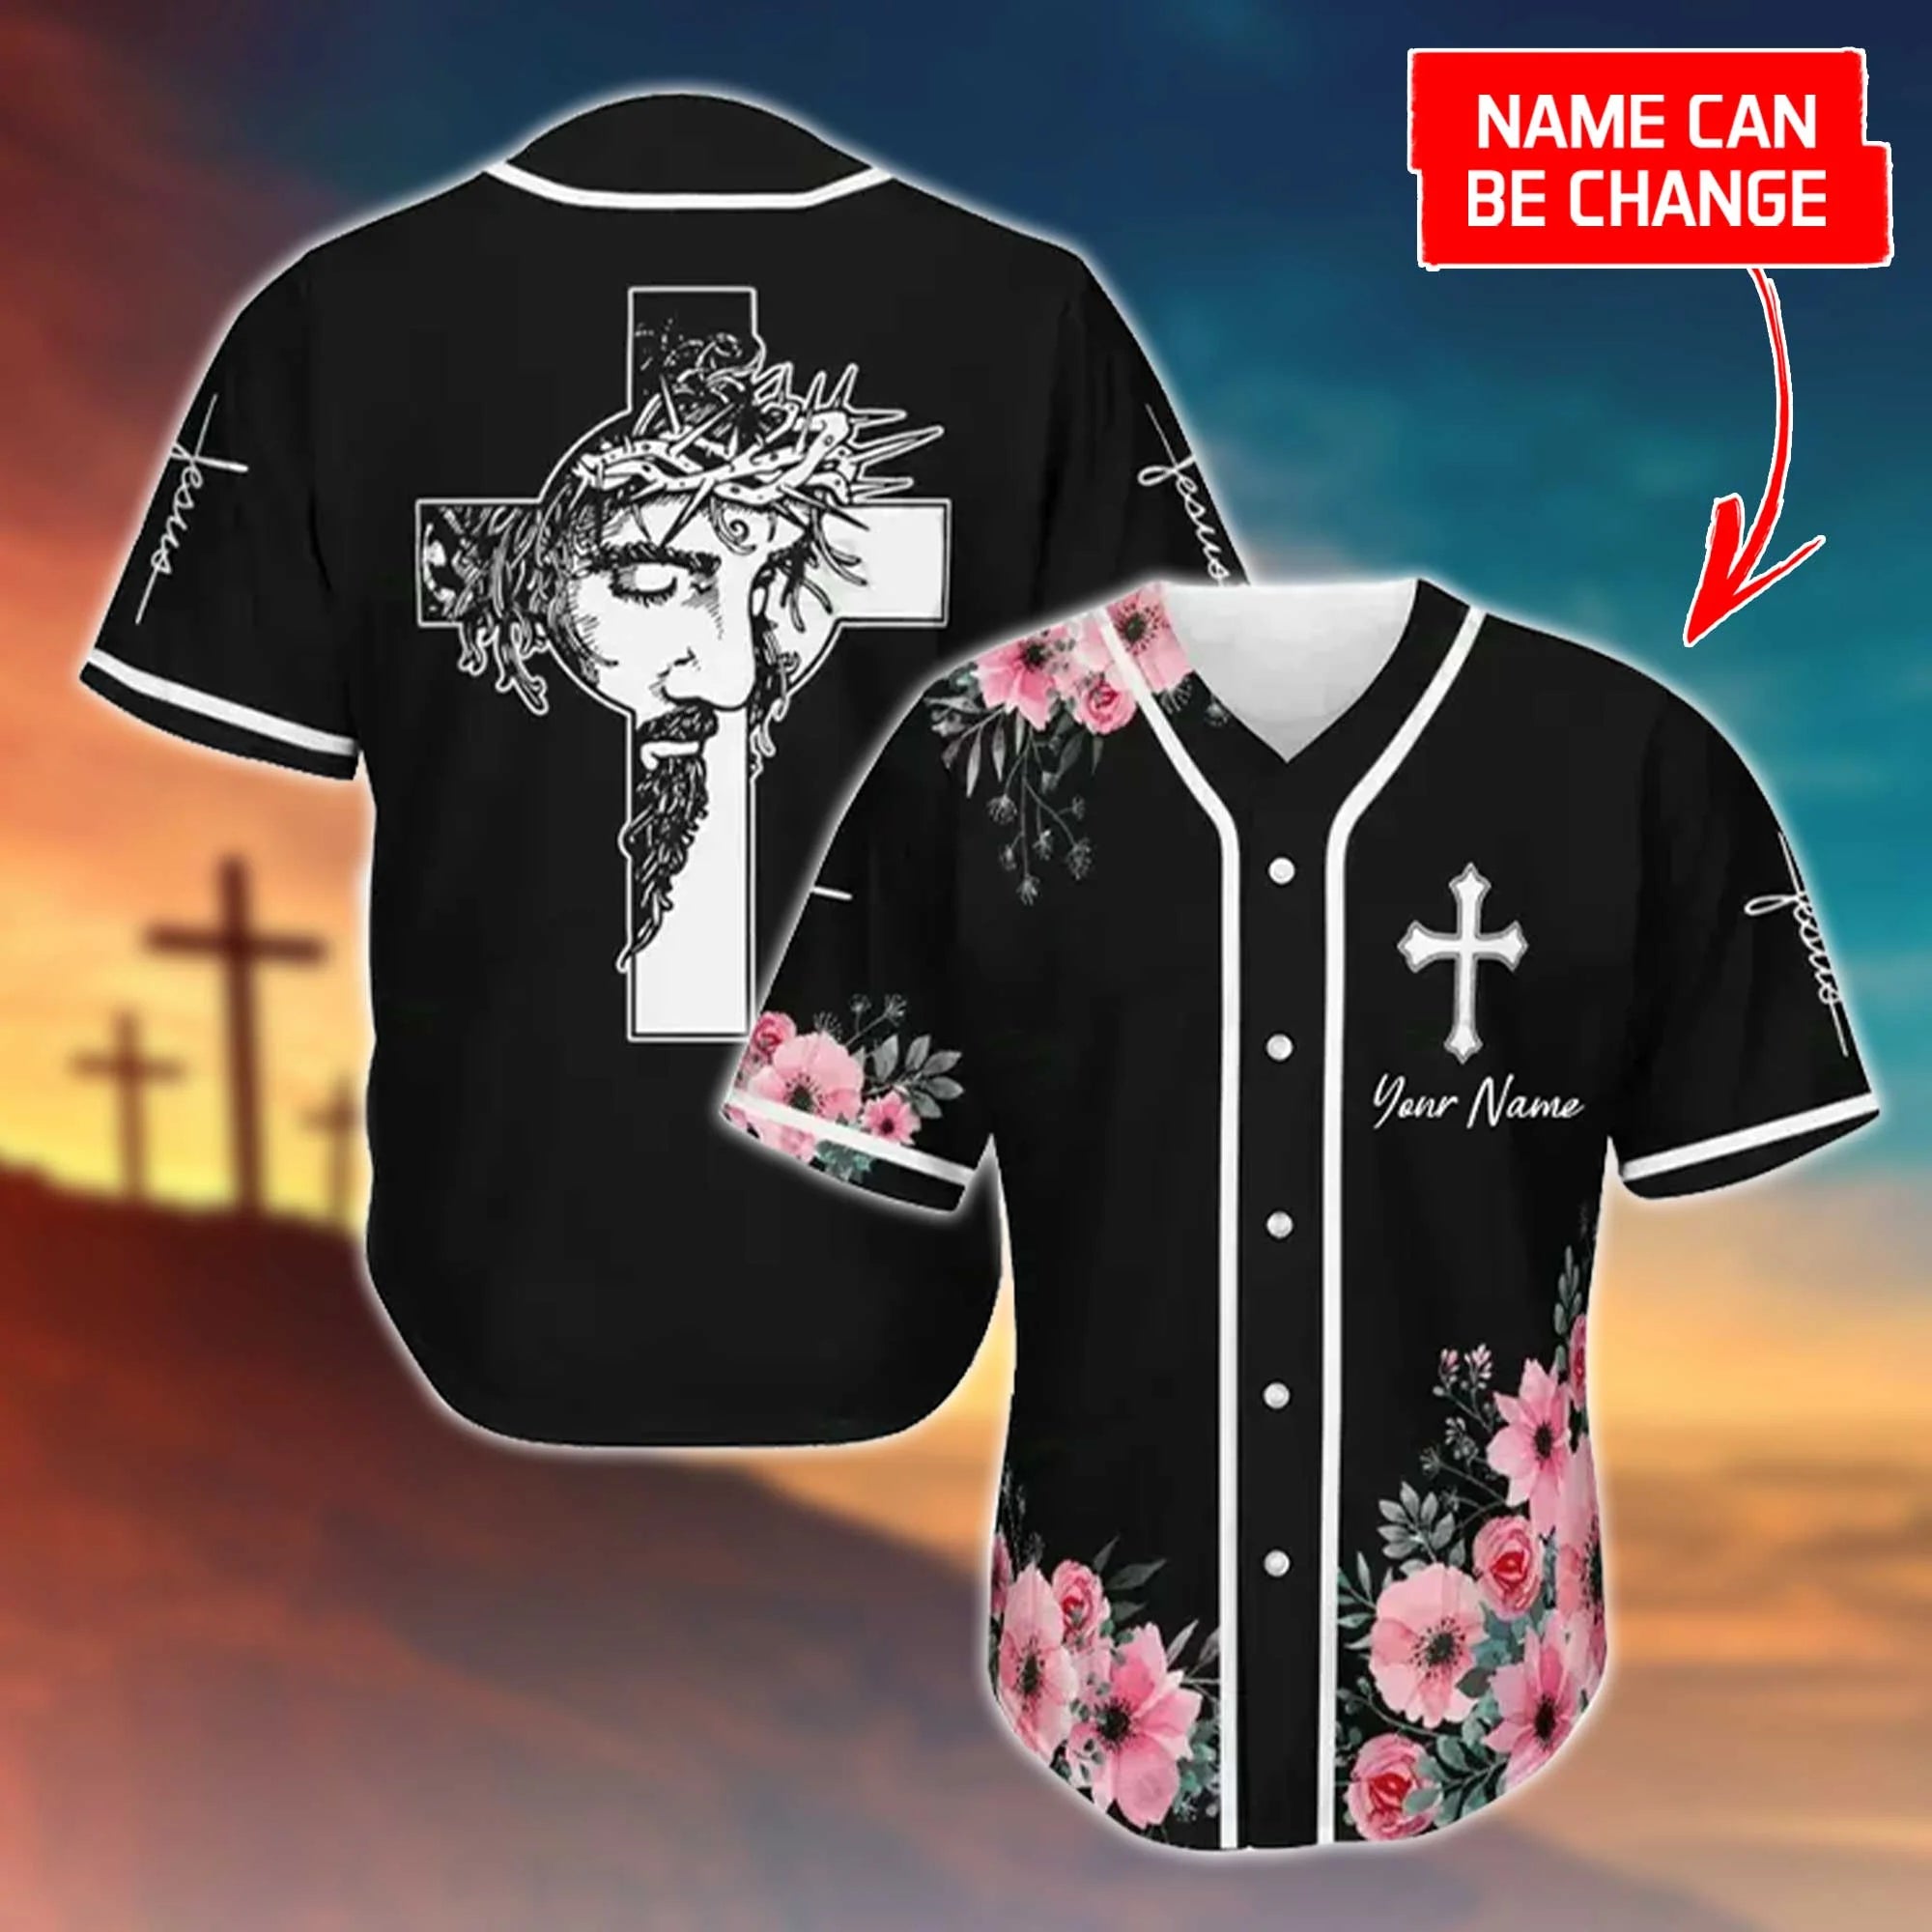 Personalized Jesus Baseball Jersey - Cross, God, Flower, Faith Baseball Jersey - Gift For Christians - Custom Baseball Jersey Shirt For Men Women